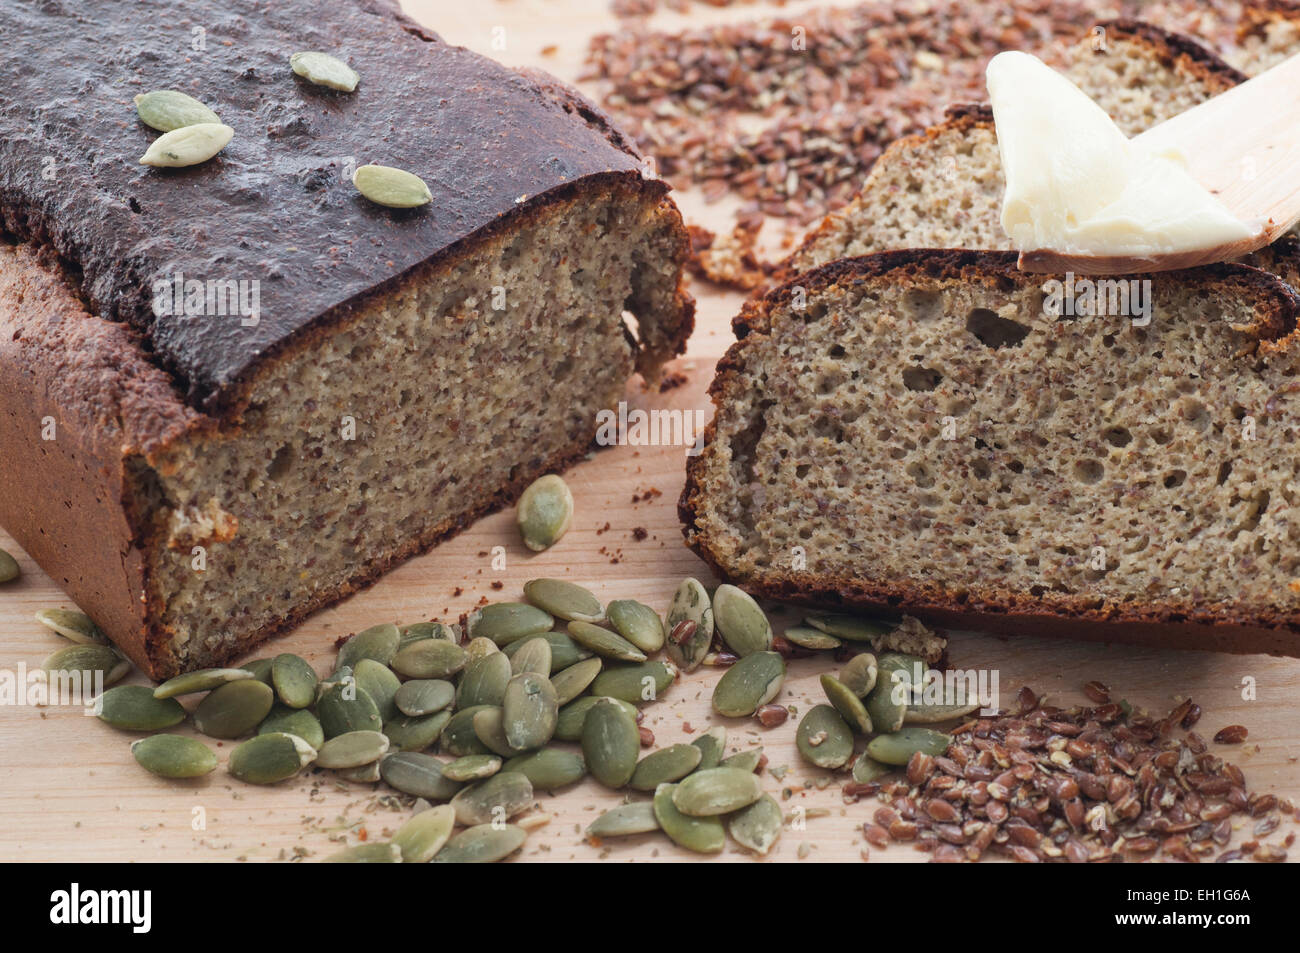 No te aburras del pan de molde: hazlo con espelta y semillas de calabaza -  El Amasadero